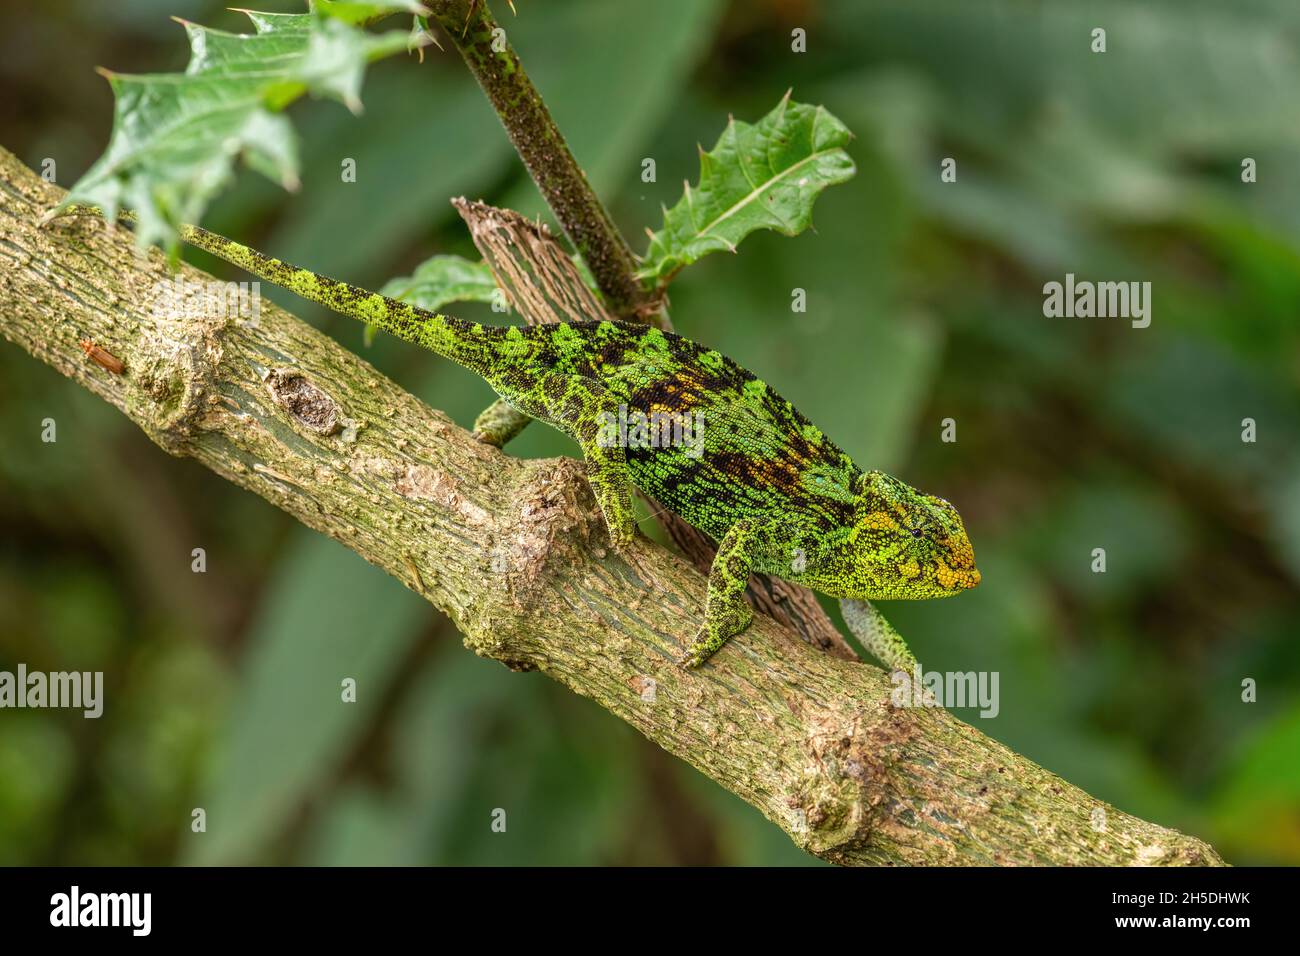 Chameleon de Johnston -Trioceros johnstoni, hermoso lagarto de colores de bosques y arbustos africanos, Bwindi, Uganda. Foto de stock